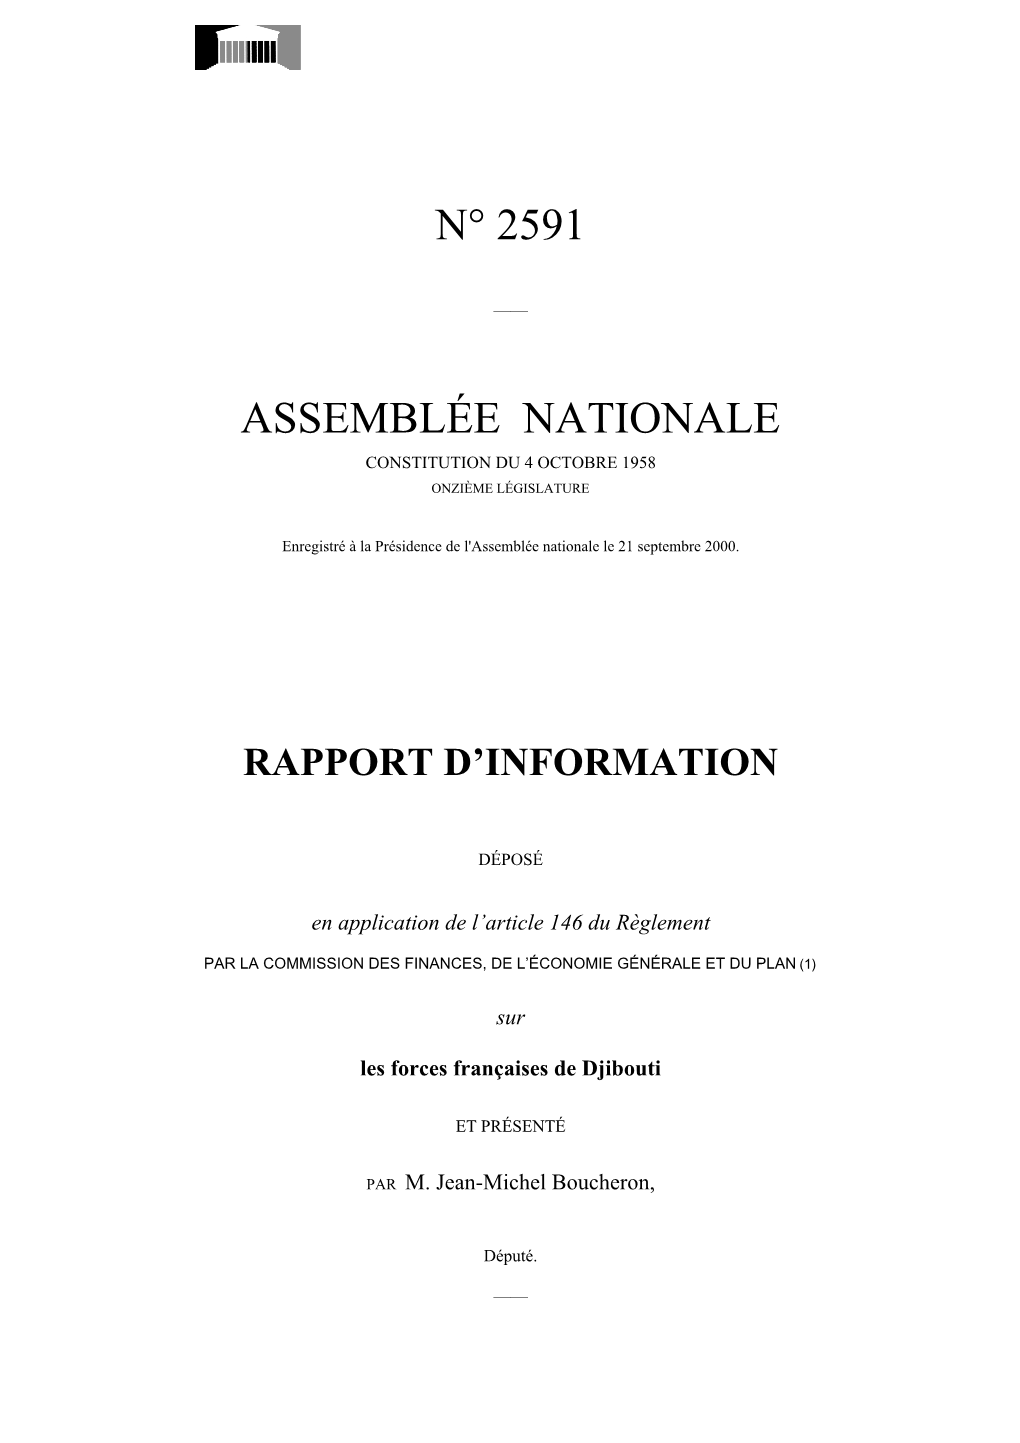 N° 2591 Assemblée Nationale